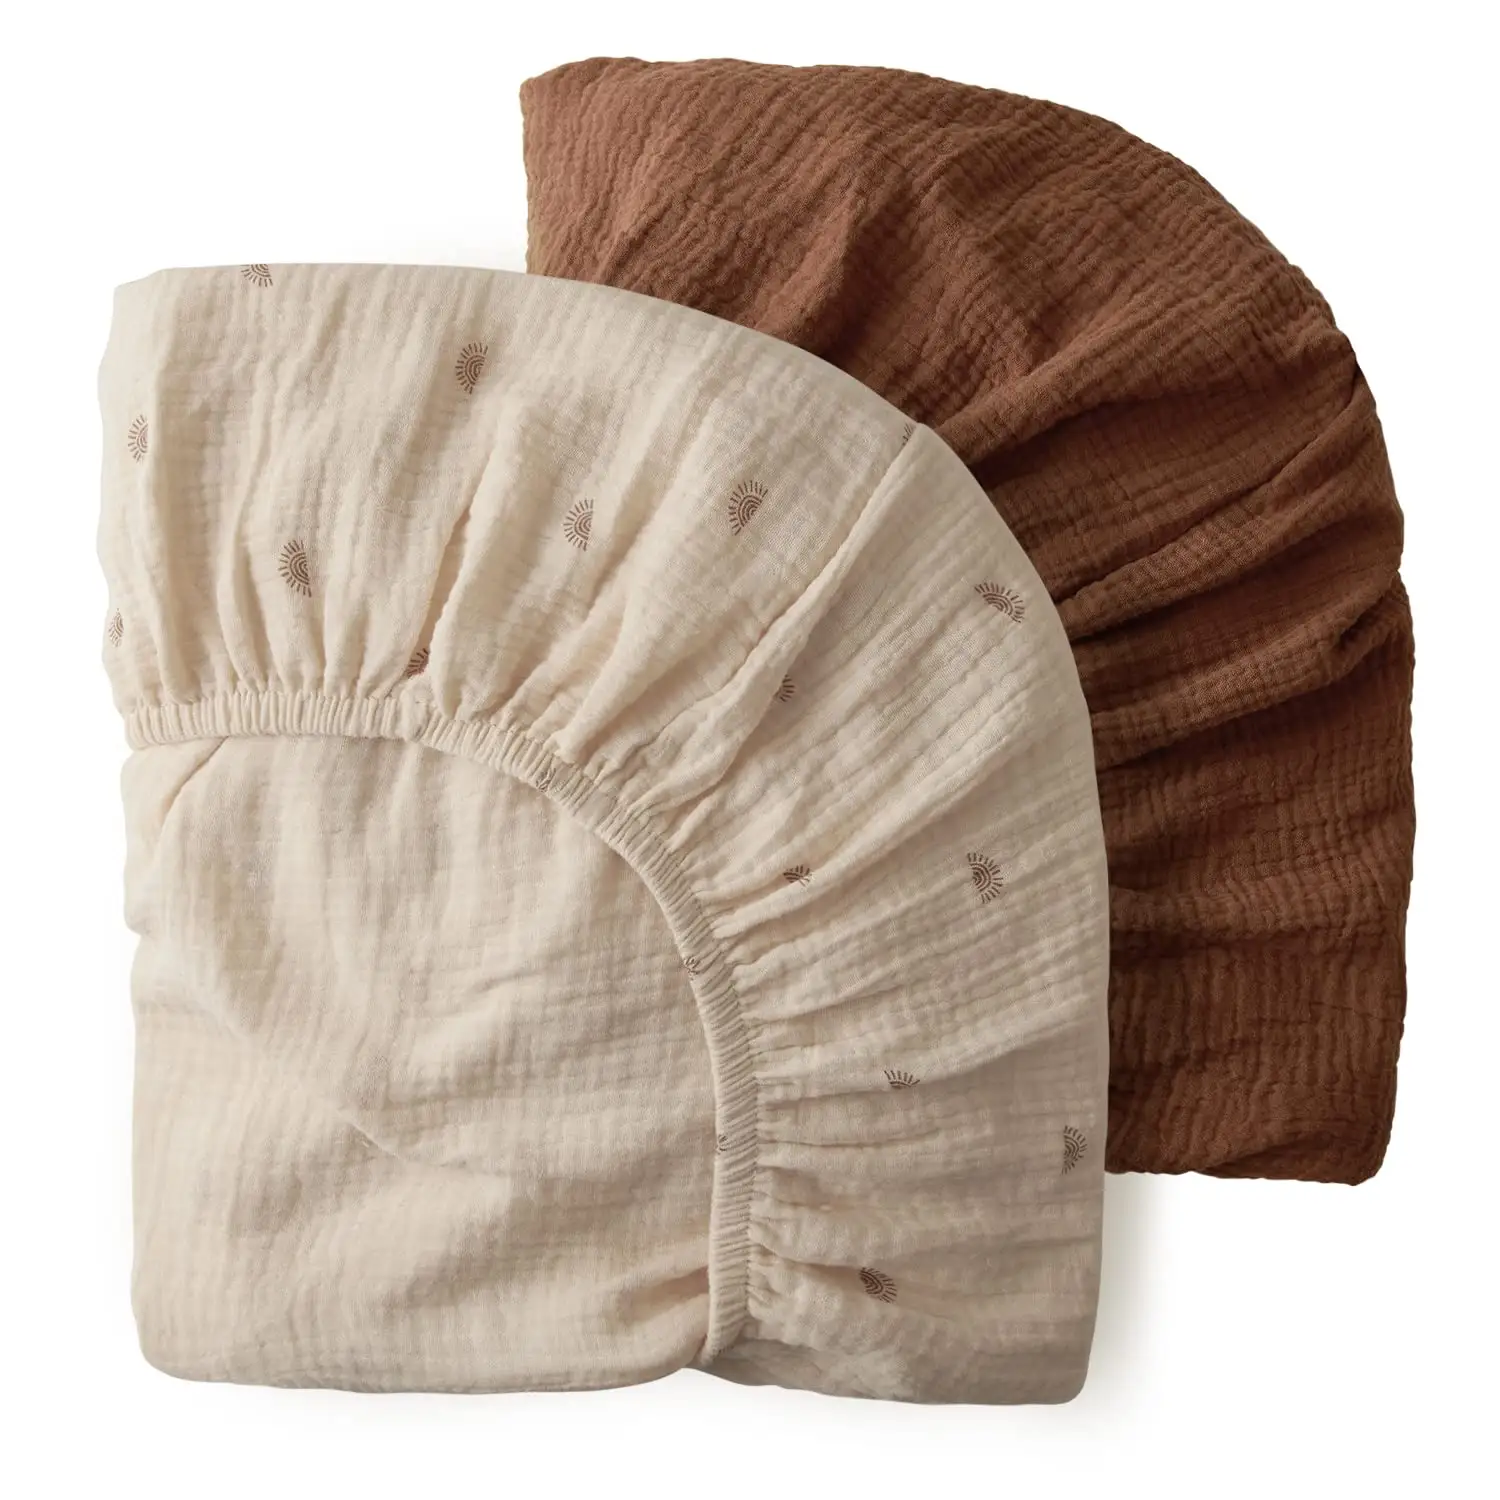 Sábana de cuna de bebé de algodón bohemio neutral ajustada para colchón de cuna estándar y colchón de cama para niños pequeños de 52,28 pulgadas